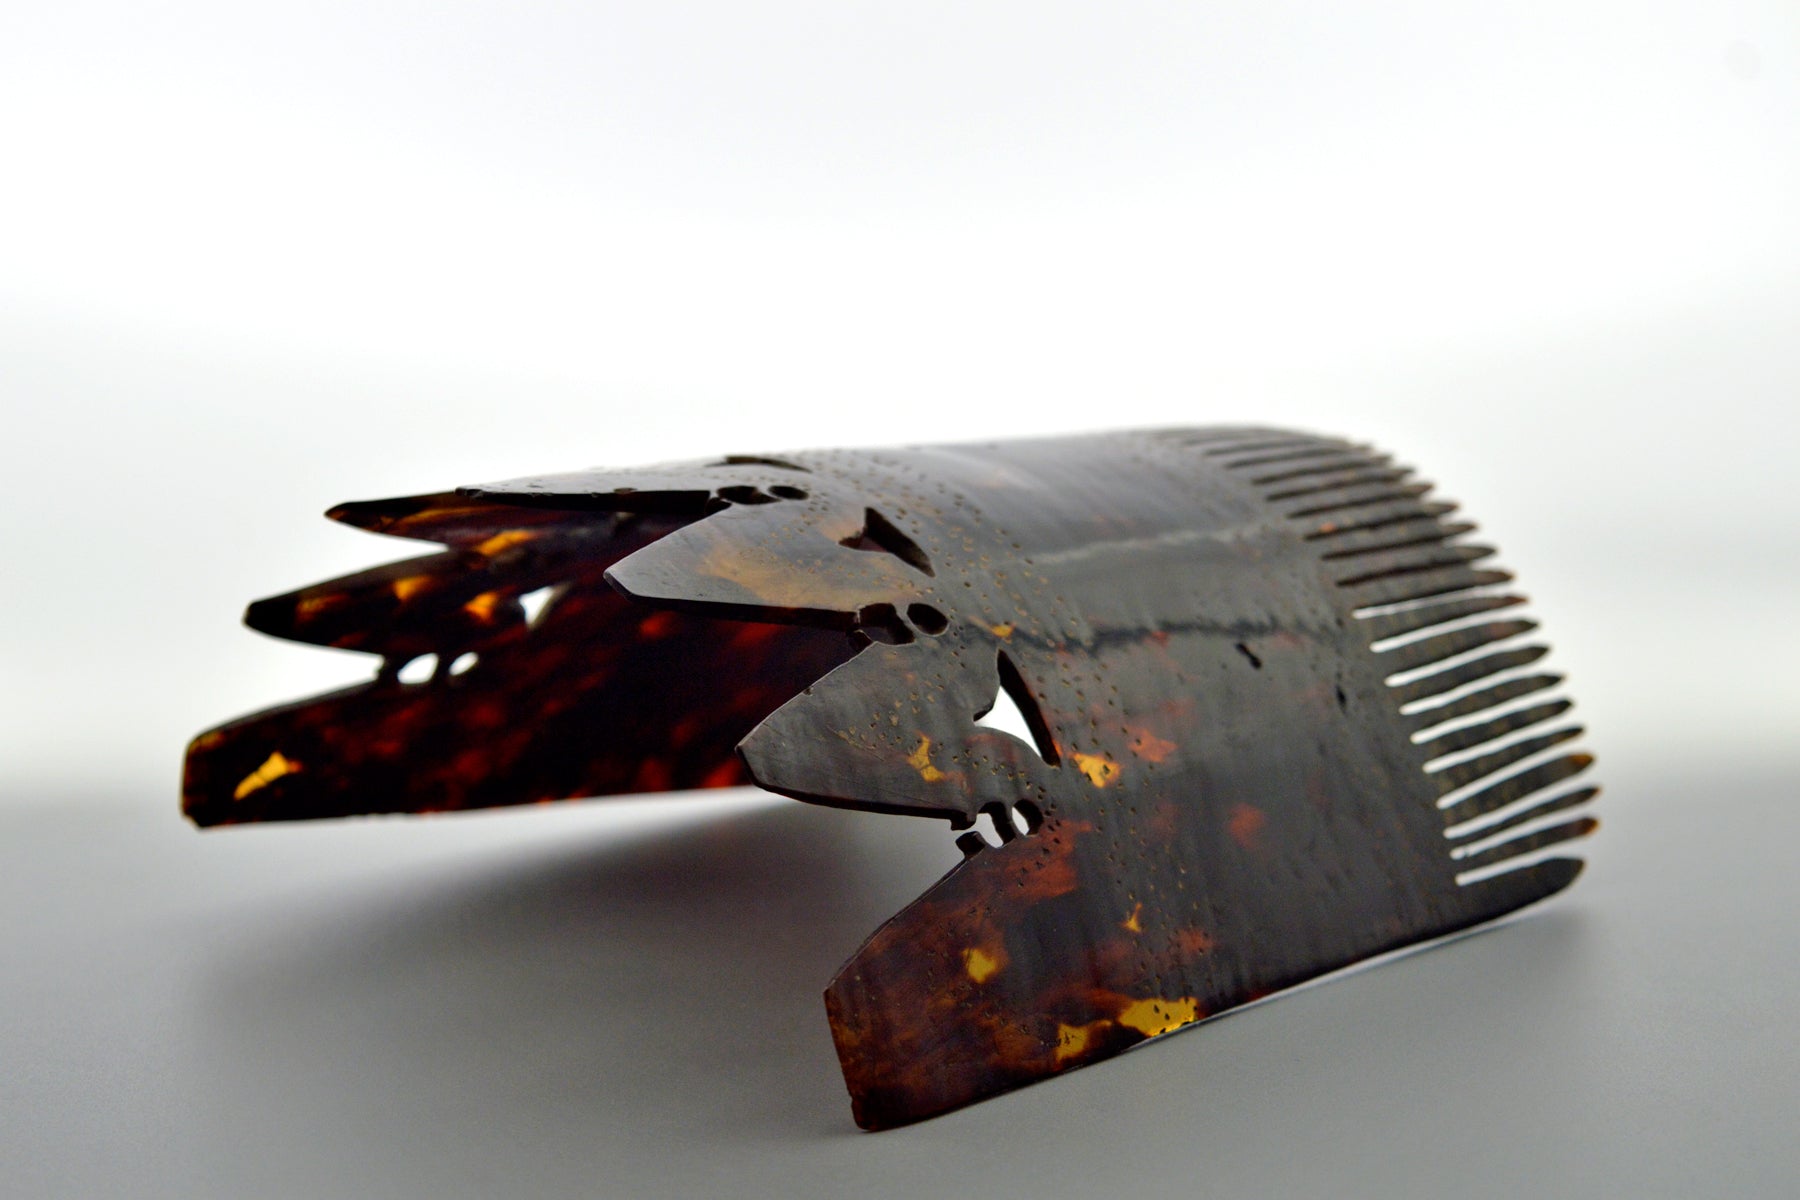 Sumba antique hair comb